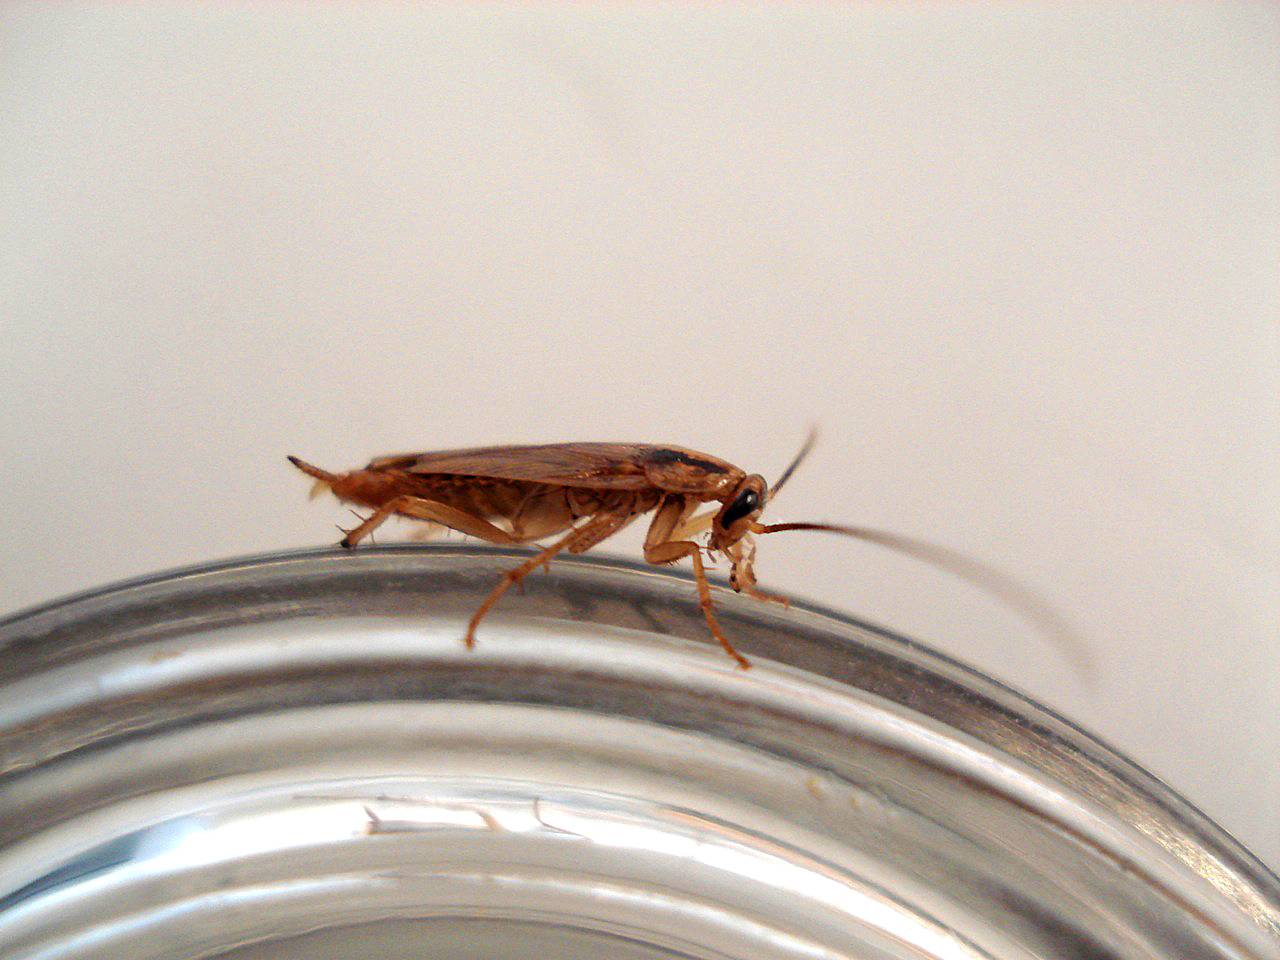 Que Funcion Tienen Las Cucarachas En El Ecosistema Qué Pasaría Si No Existieran Las Cucarachas